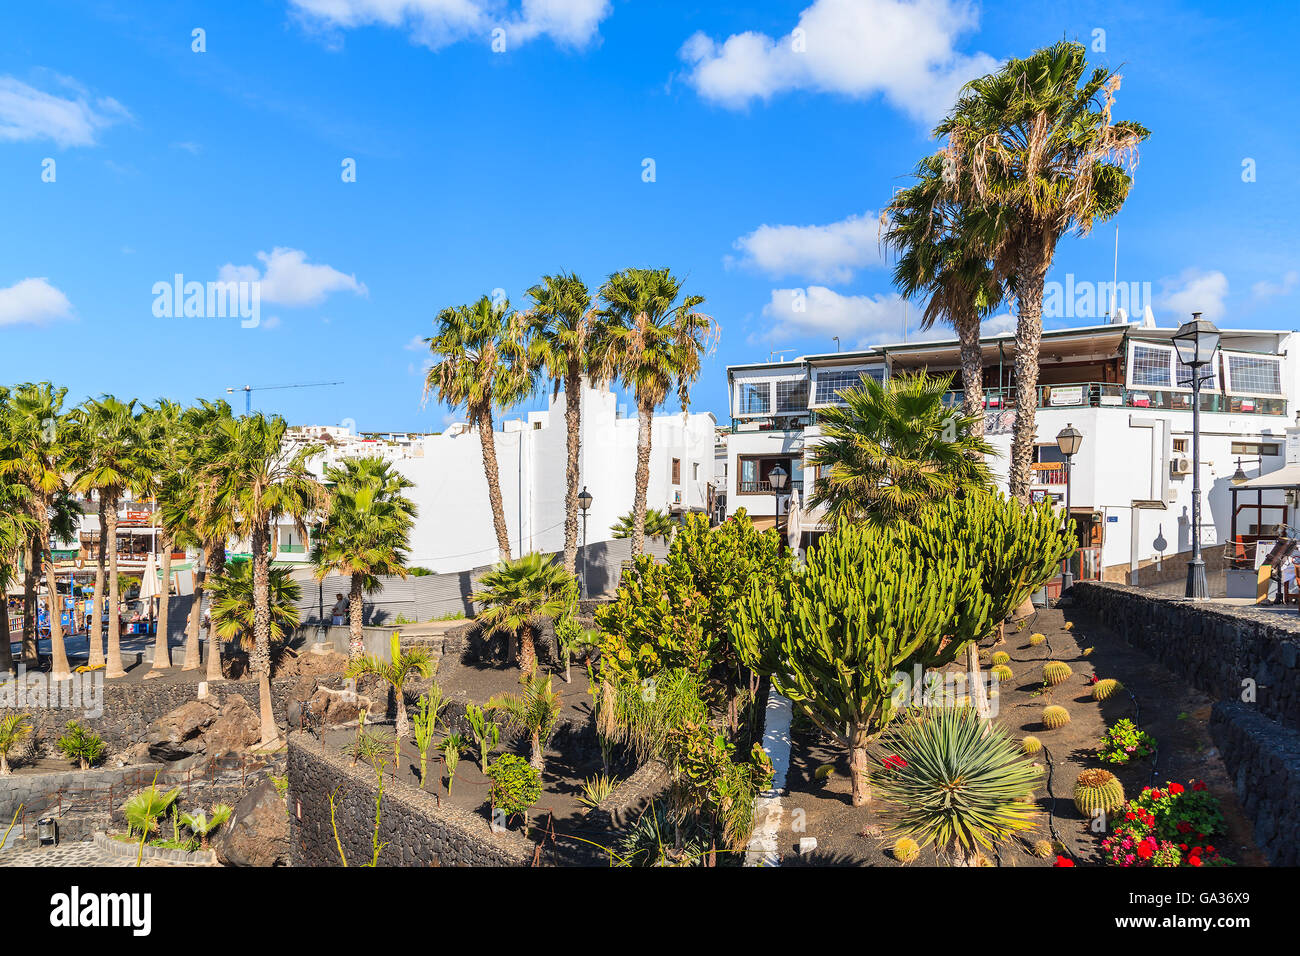 PUERTO DEL CARMEN, Lanzarote Island - Jan 17, 2015: piante tropicali in Puerto del Carmen town. Le isole Canarie sono meta di vacanze, specialmente durante la stagione invernale europea. Foto Stock